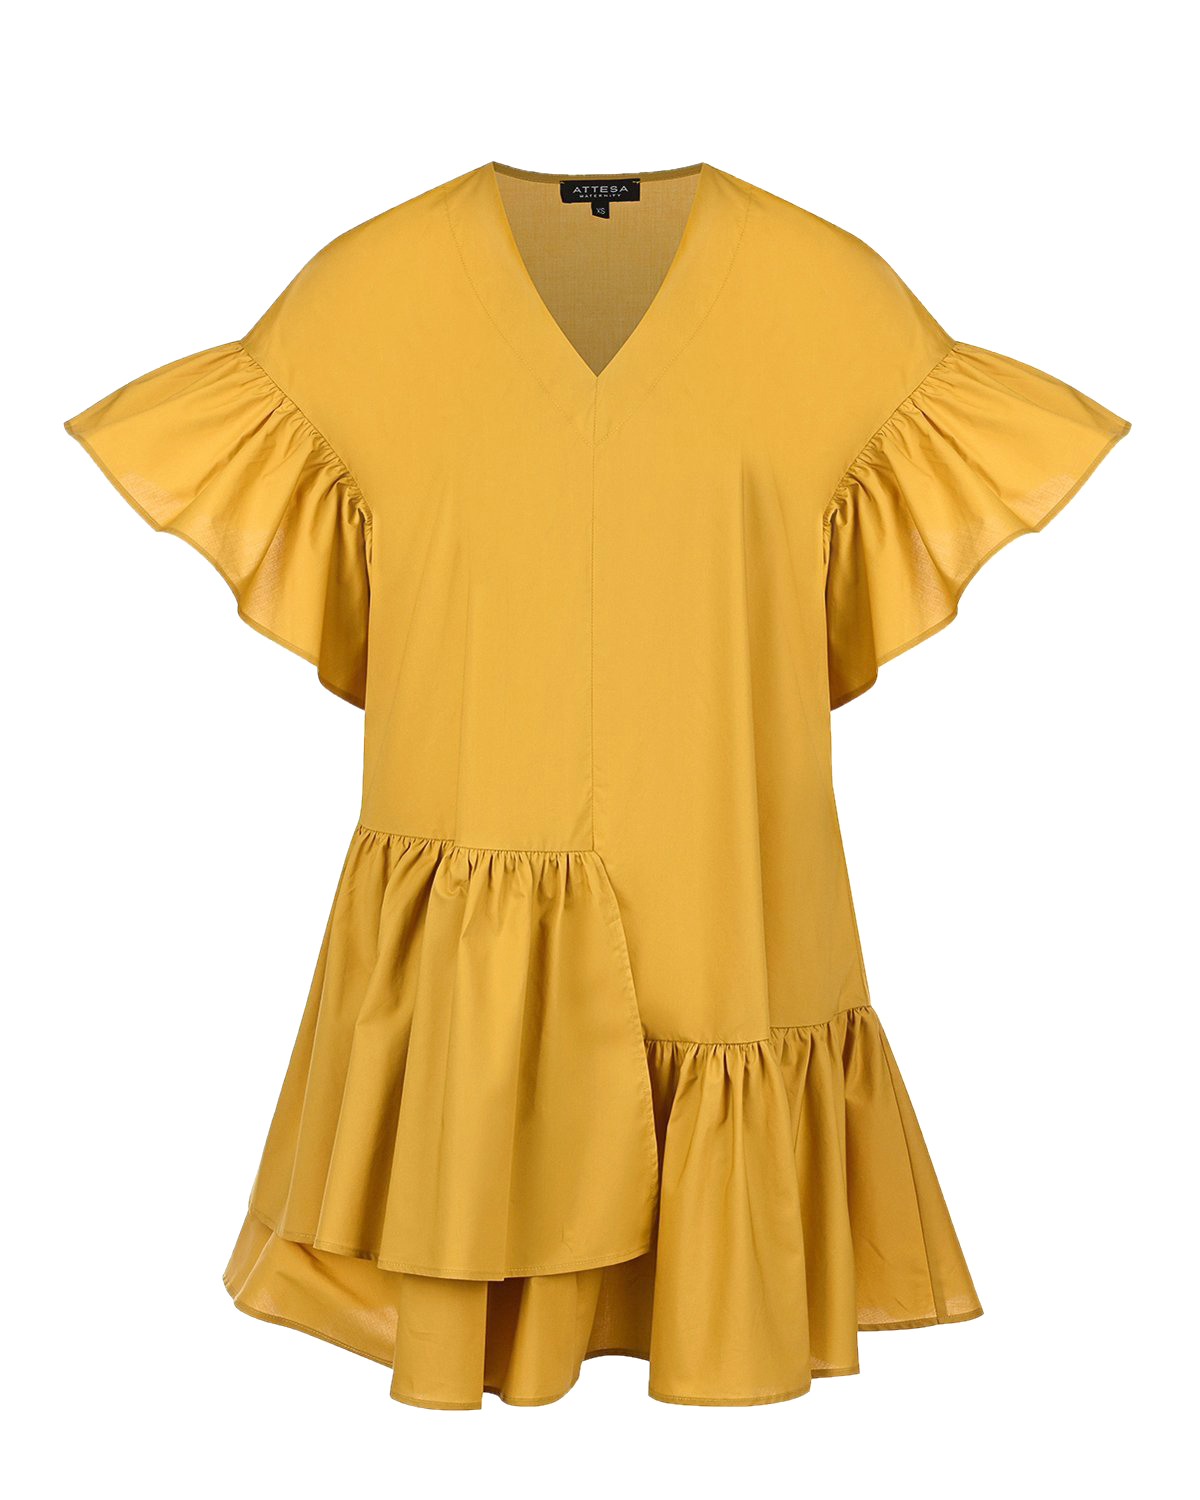 Желтое платье с воланами Attesa, размер 38, цвет желтый